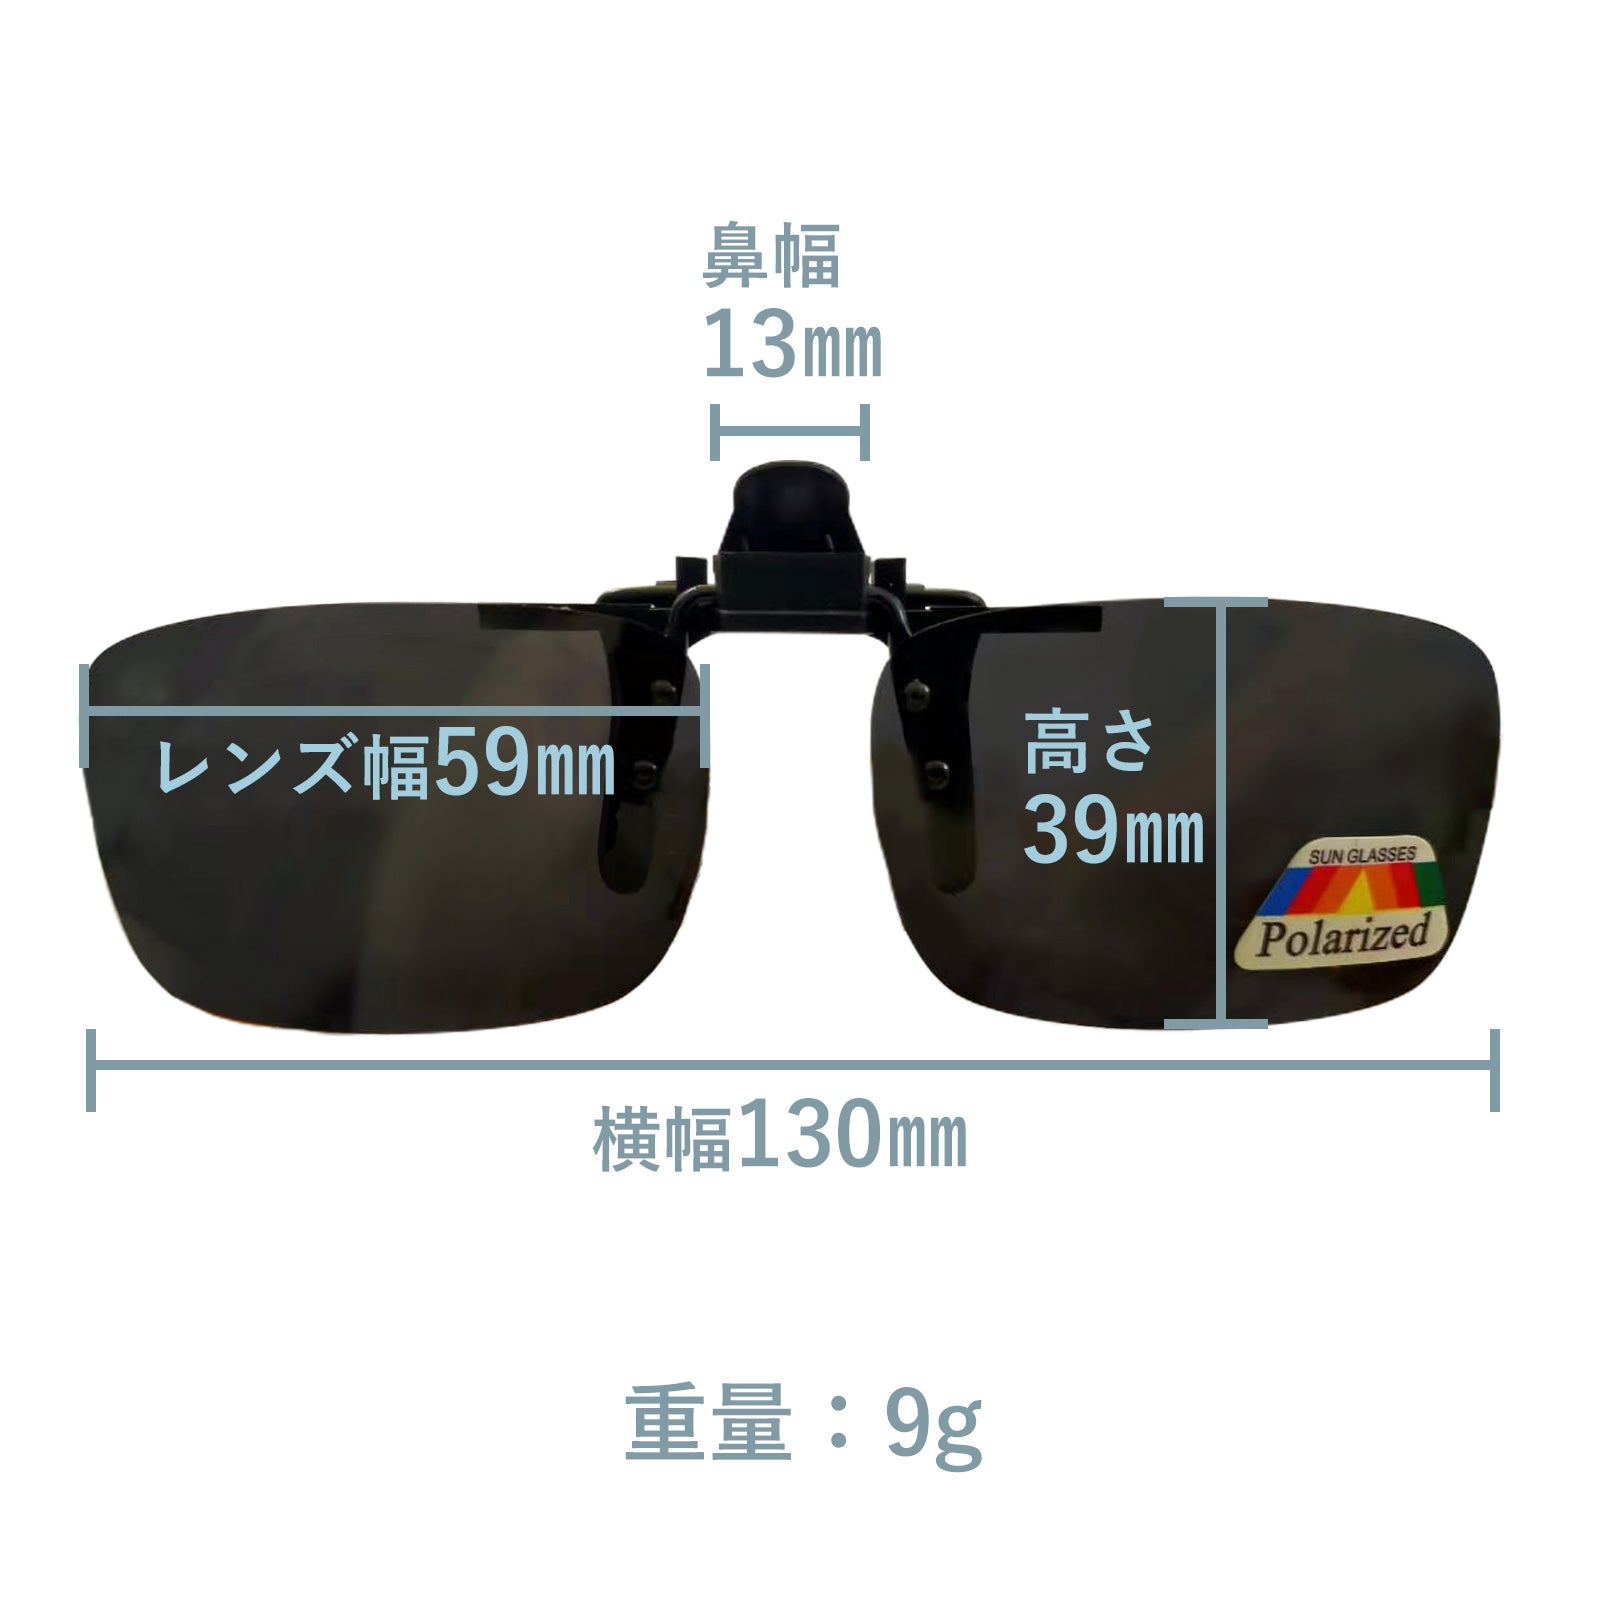 クリップオン サングラス 偏光レンズ Polarized lends(ポラライズド レンズ) メガネの上からつけられる 返品交換不可  cliponlends